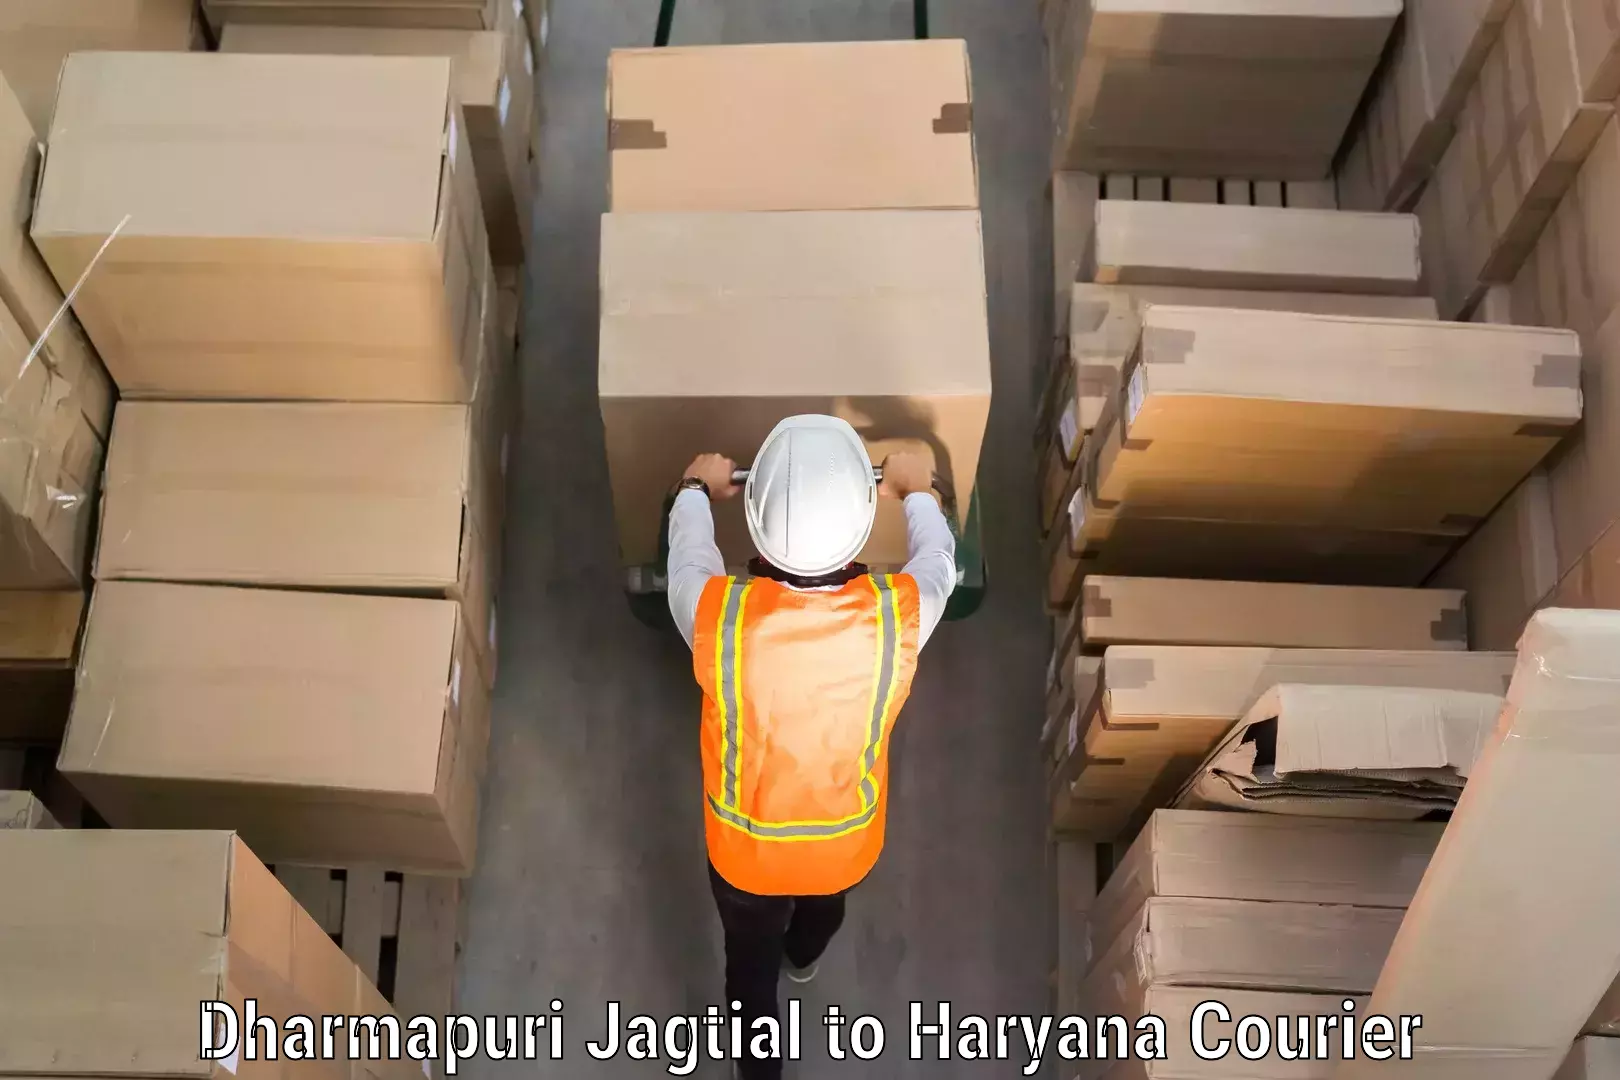 Luggage delivery app Dharmapuri Jagtial to NCR Haryana